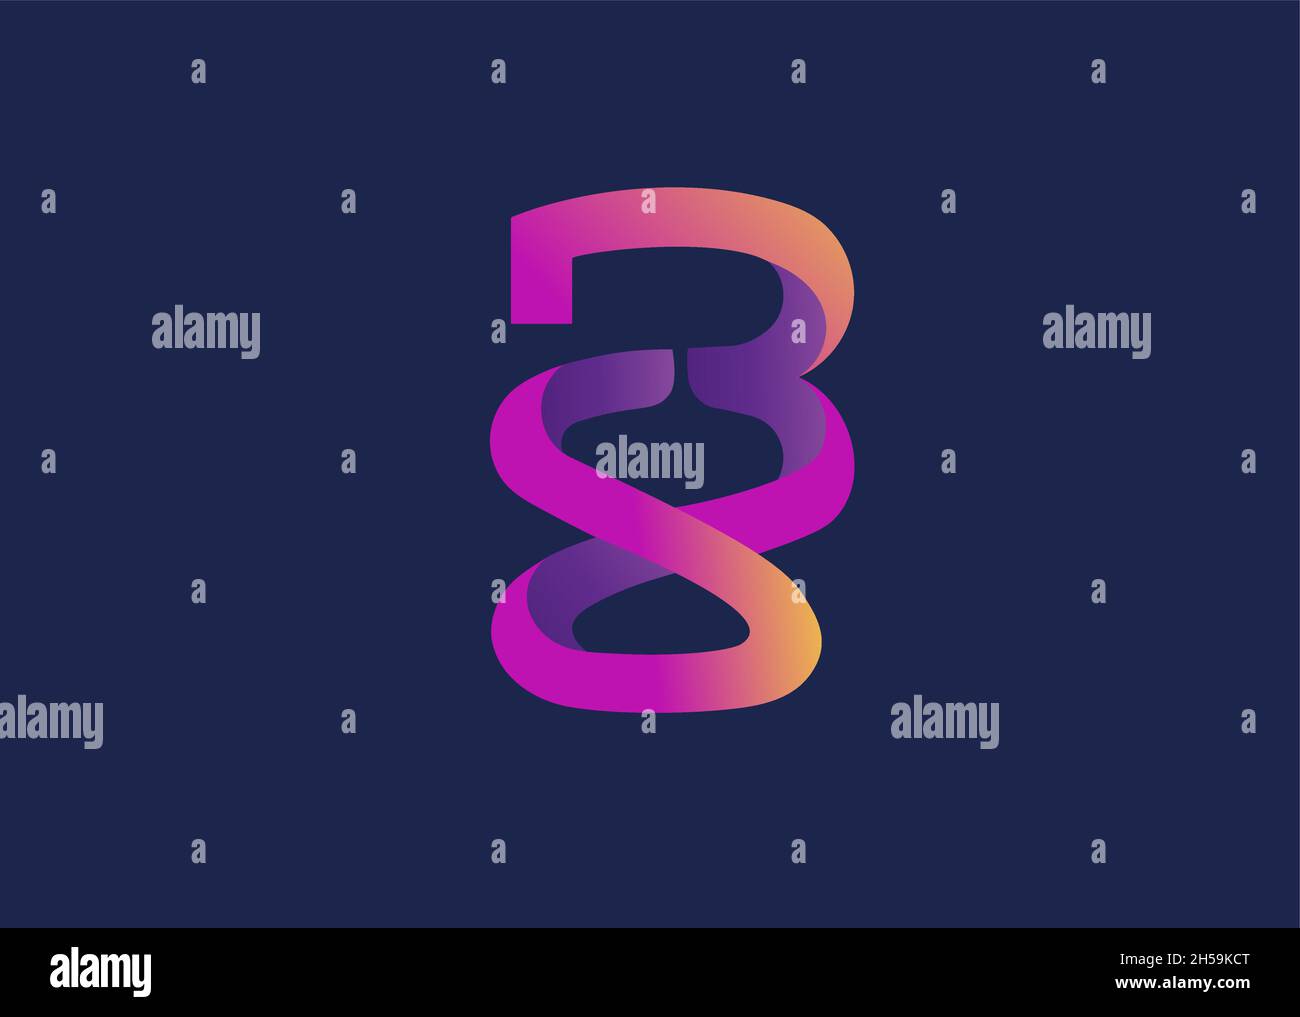 Farbenfrohe SB- oder BS-Logo-Vektorvorlage mit Anfangsbuchstaben starke und einprägsame Designdarstellung Stock Vektor